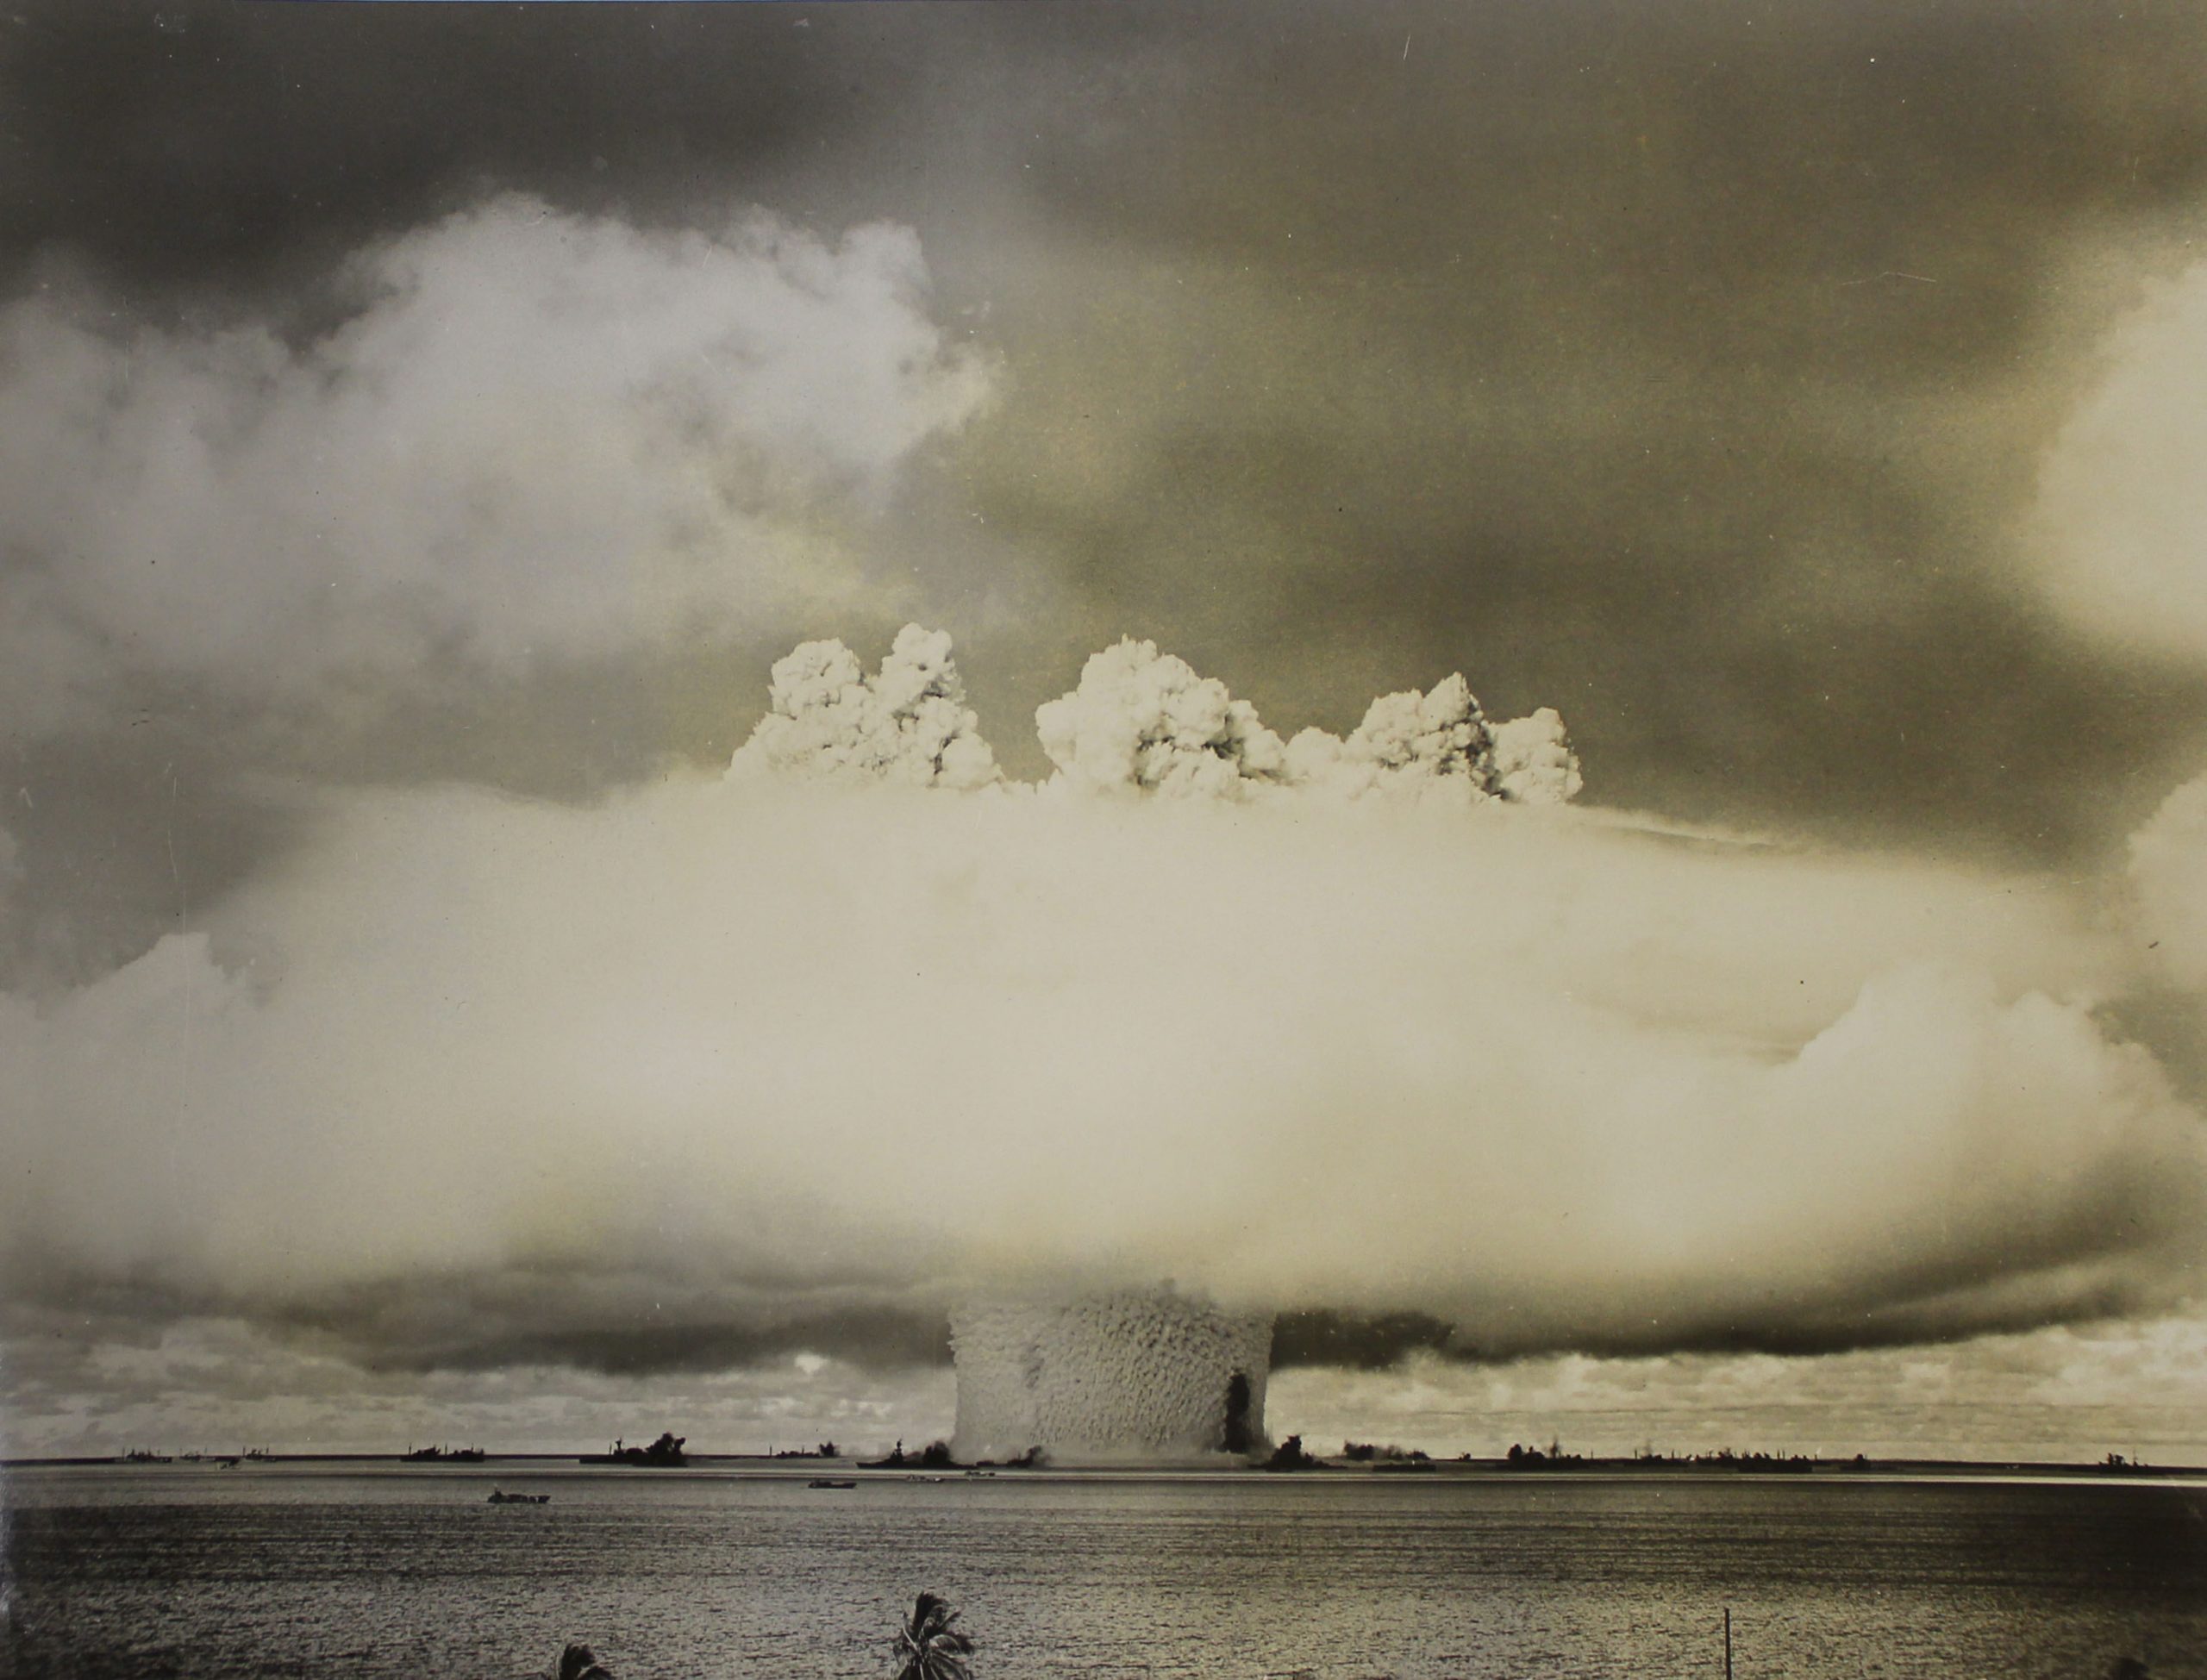 Den karakteristiske, soppformede eksplosjonen etter en atombombe. Fra en prøvesprengning under vann.